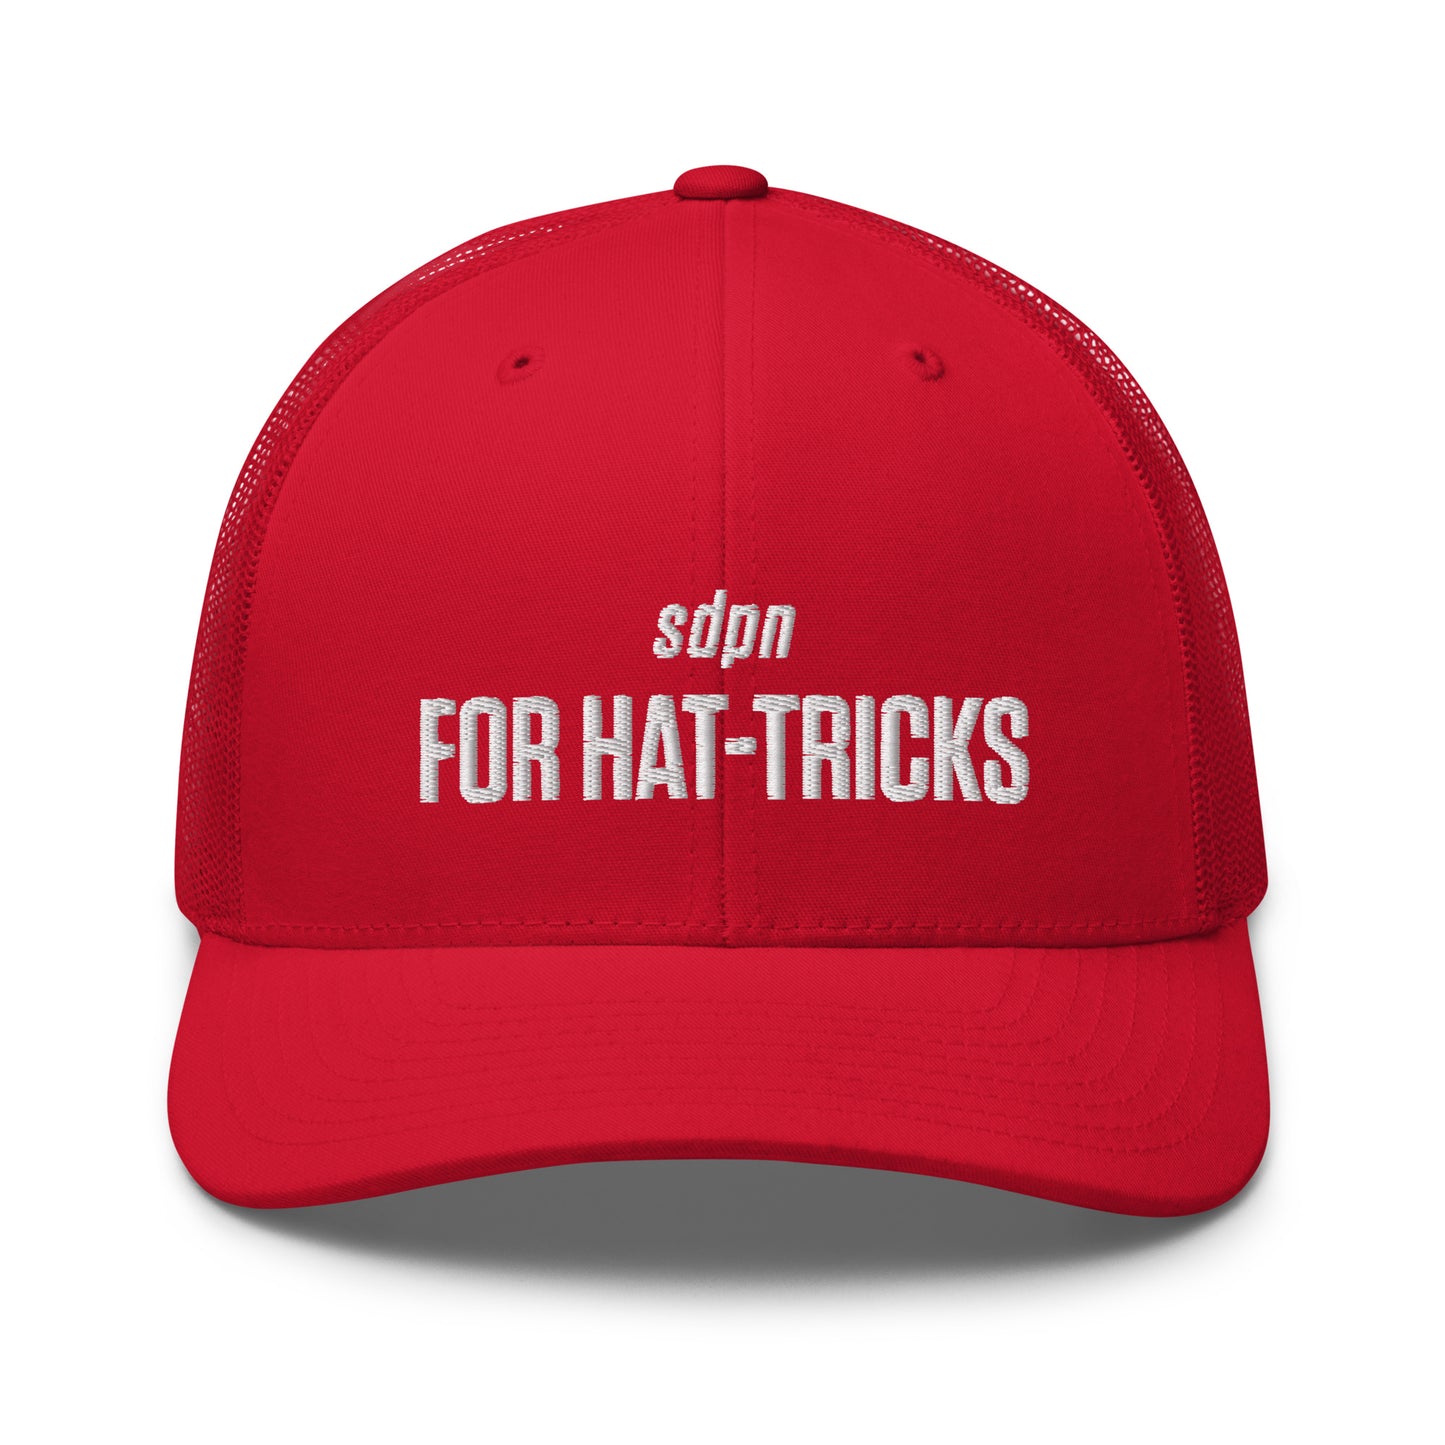 For Hat-Tricks Trucker Cap